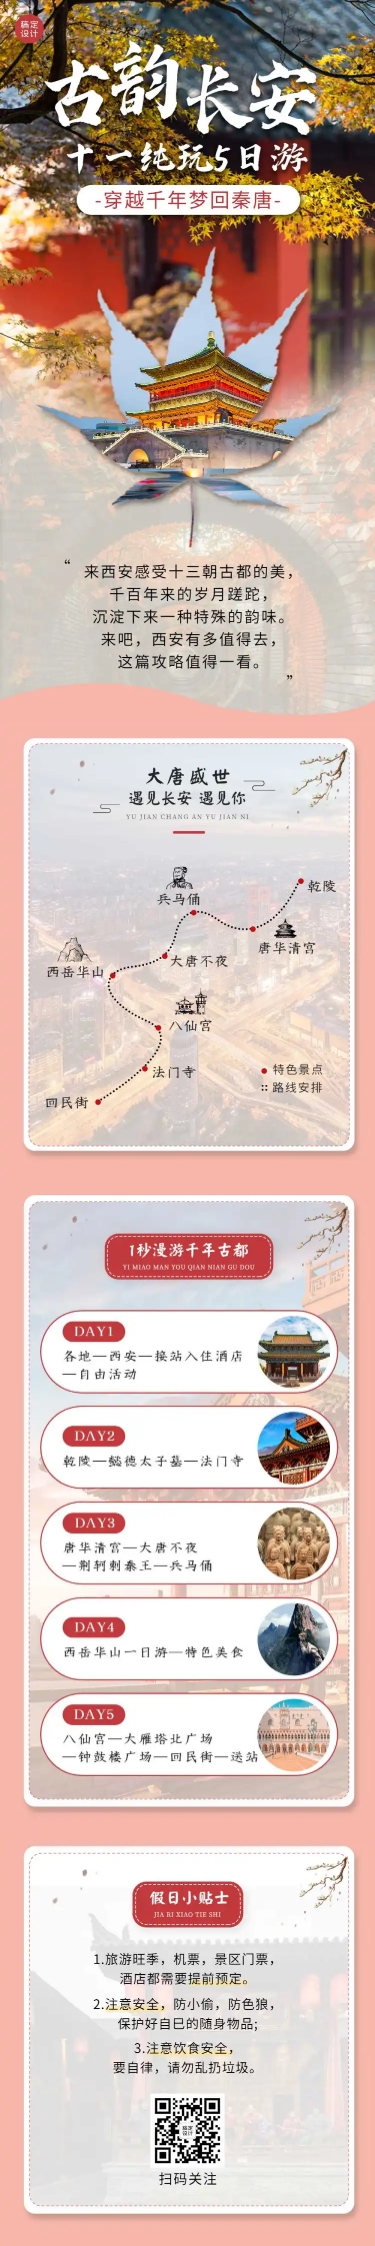 国庆十一旅游路线攻略中国风长图